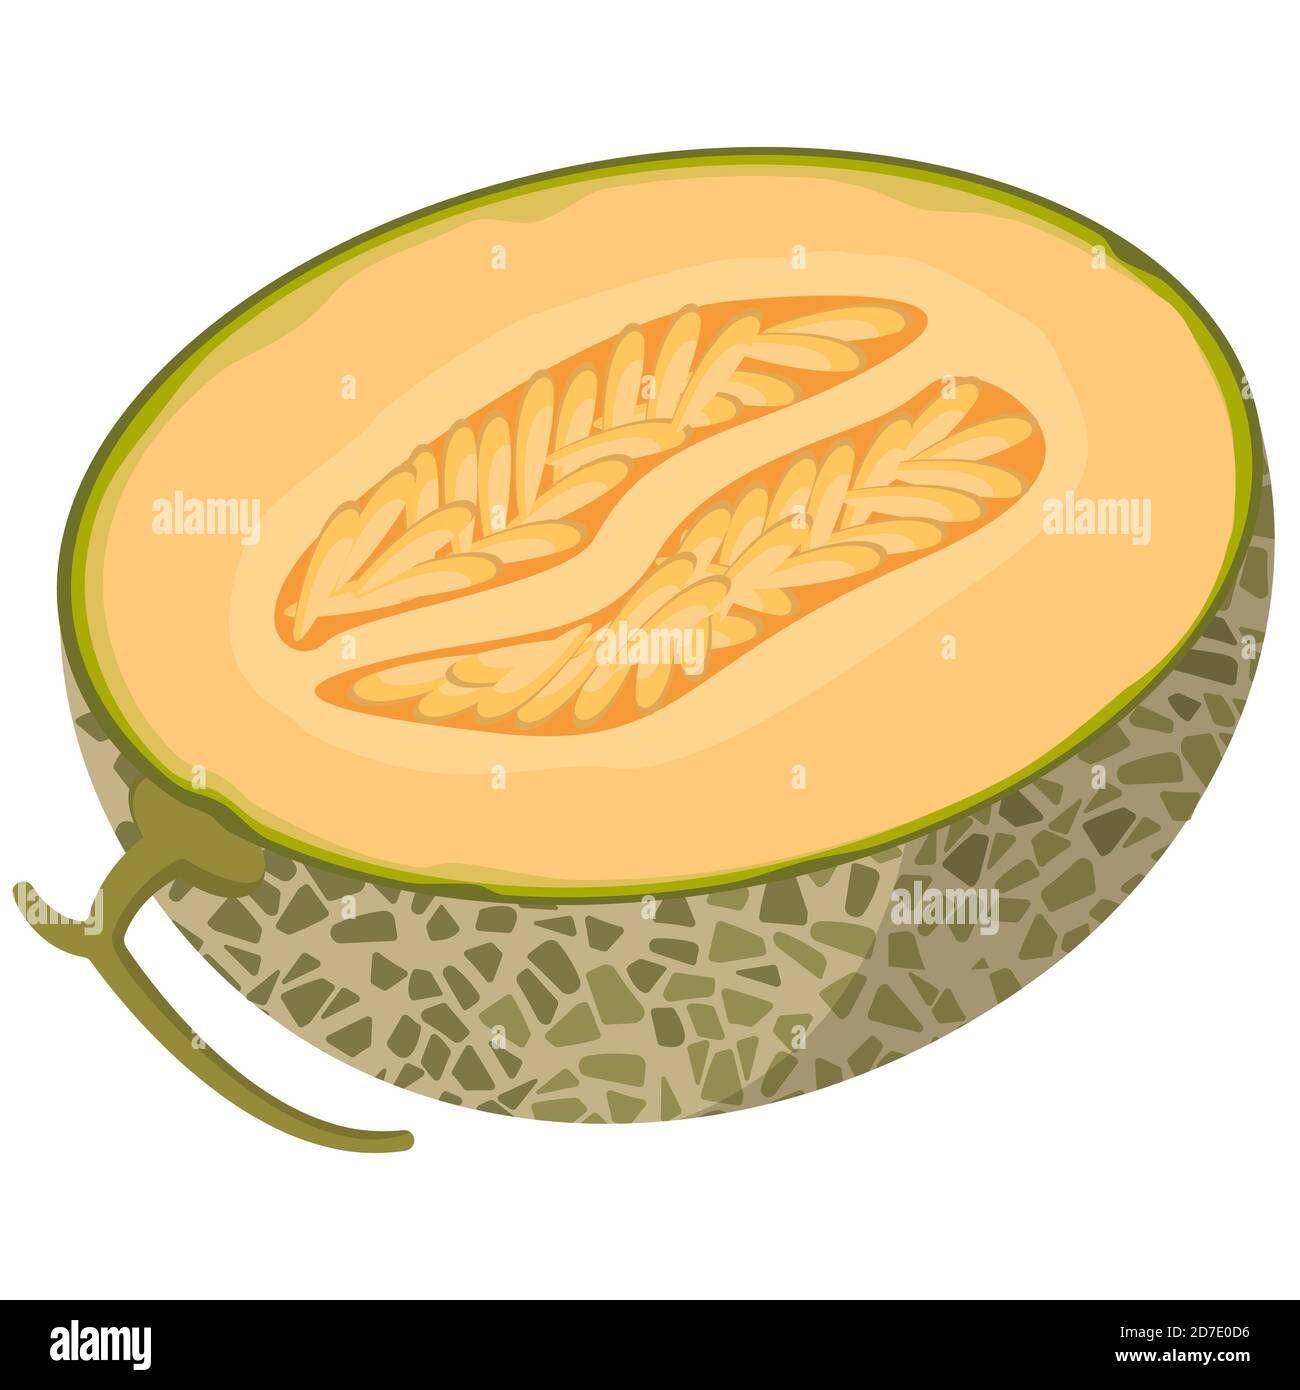 Halb Melone im Cartoon-Stil. Saftige Frucht isoliert auf weißem Hintergrund. Stock Vektor